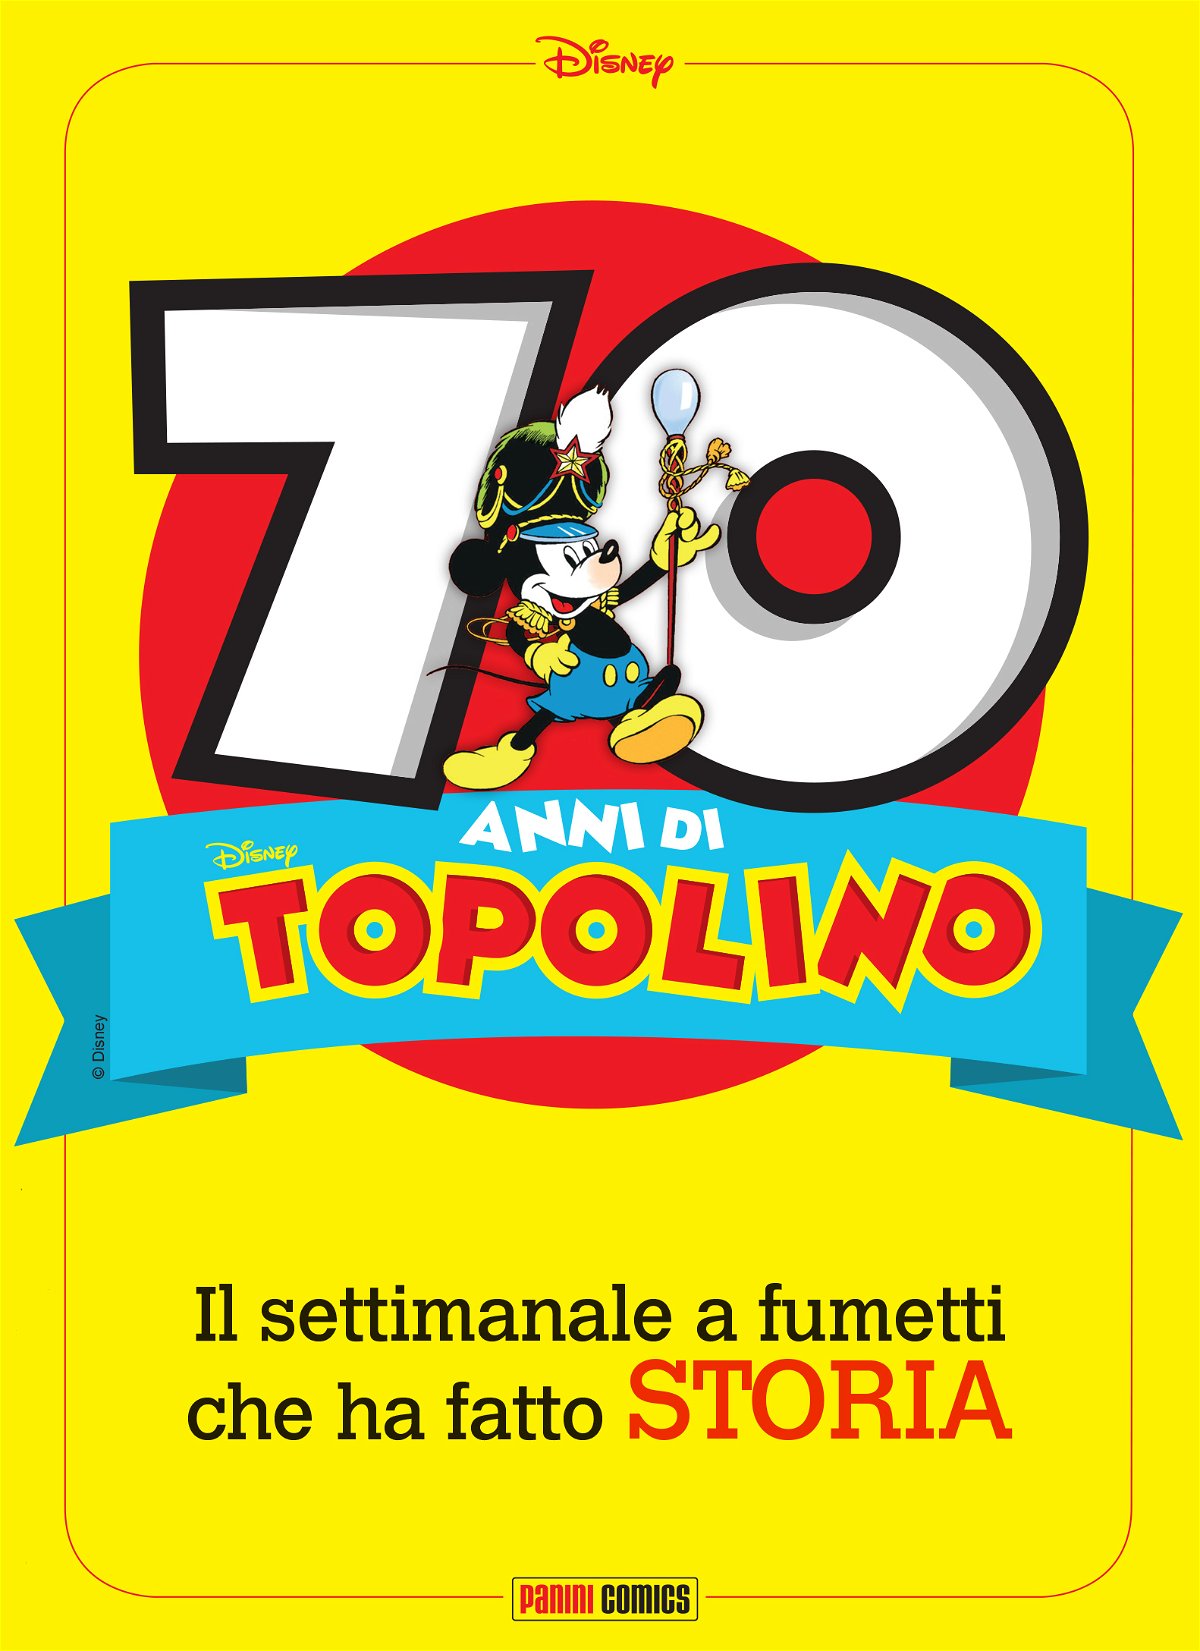 Cover del 70esimo di Topolino